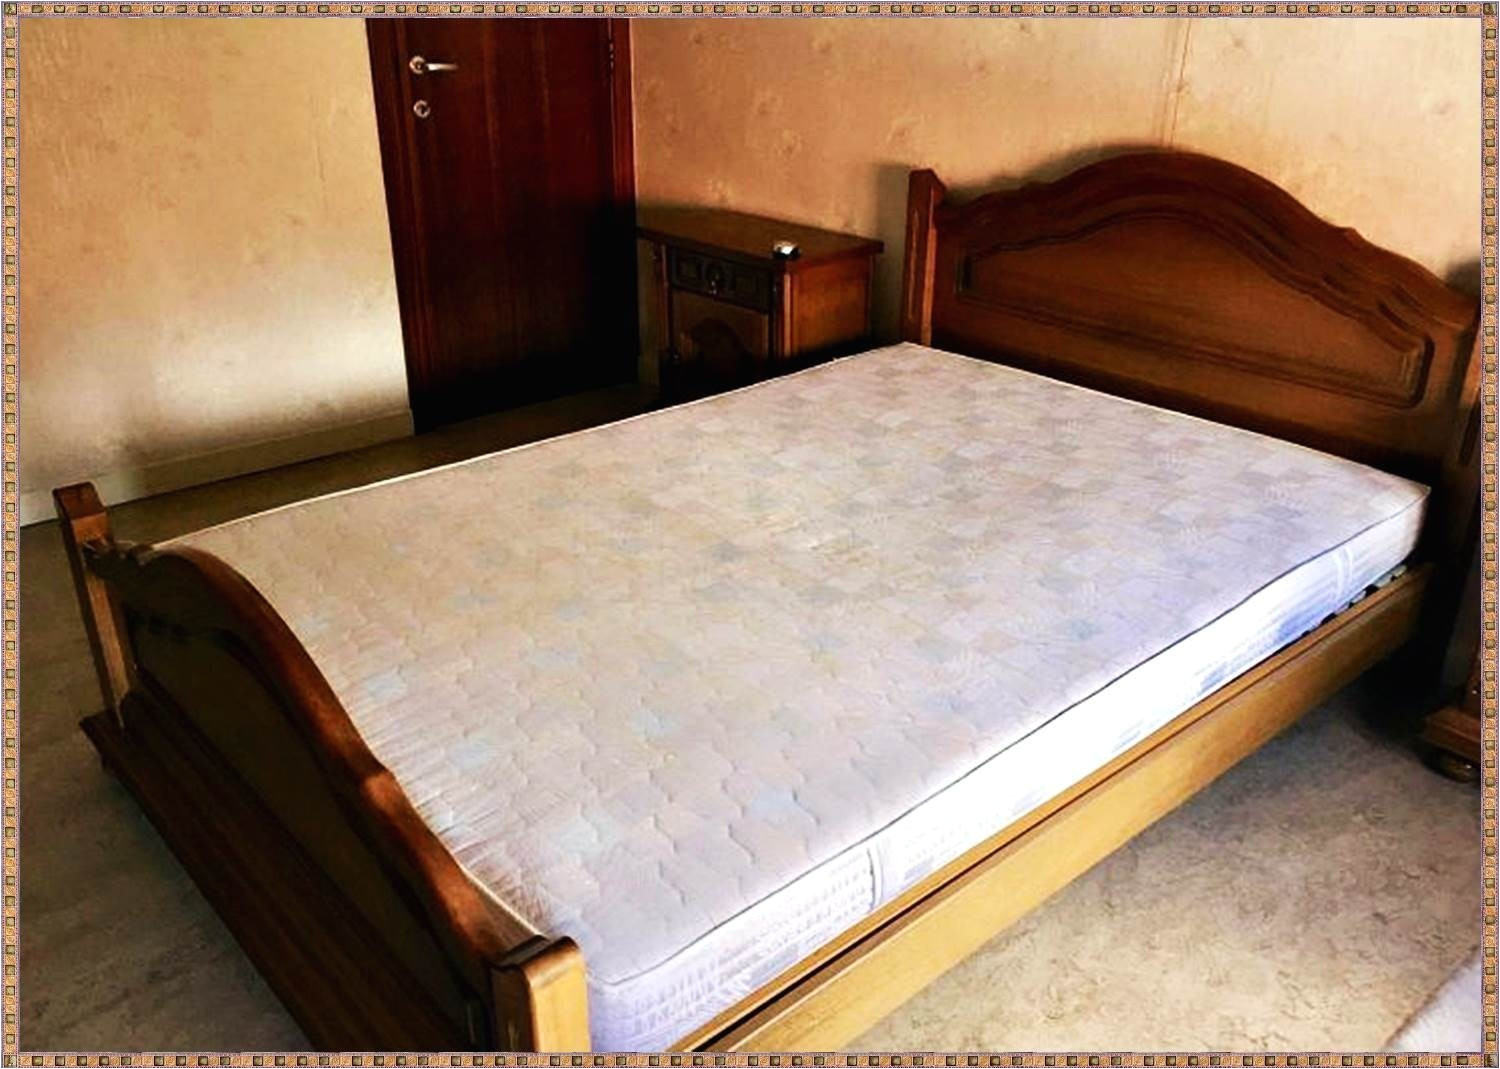 ikea crib fit standard mattress